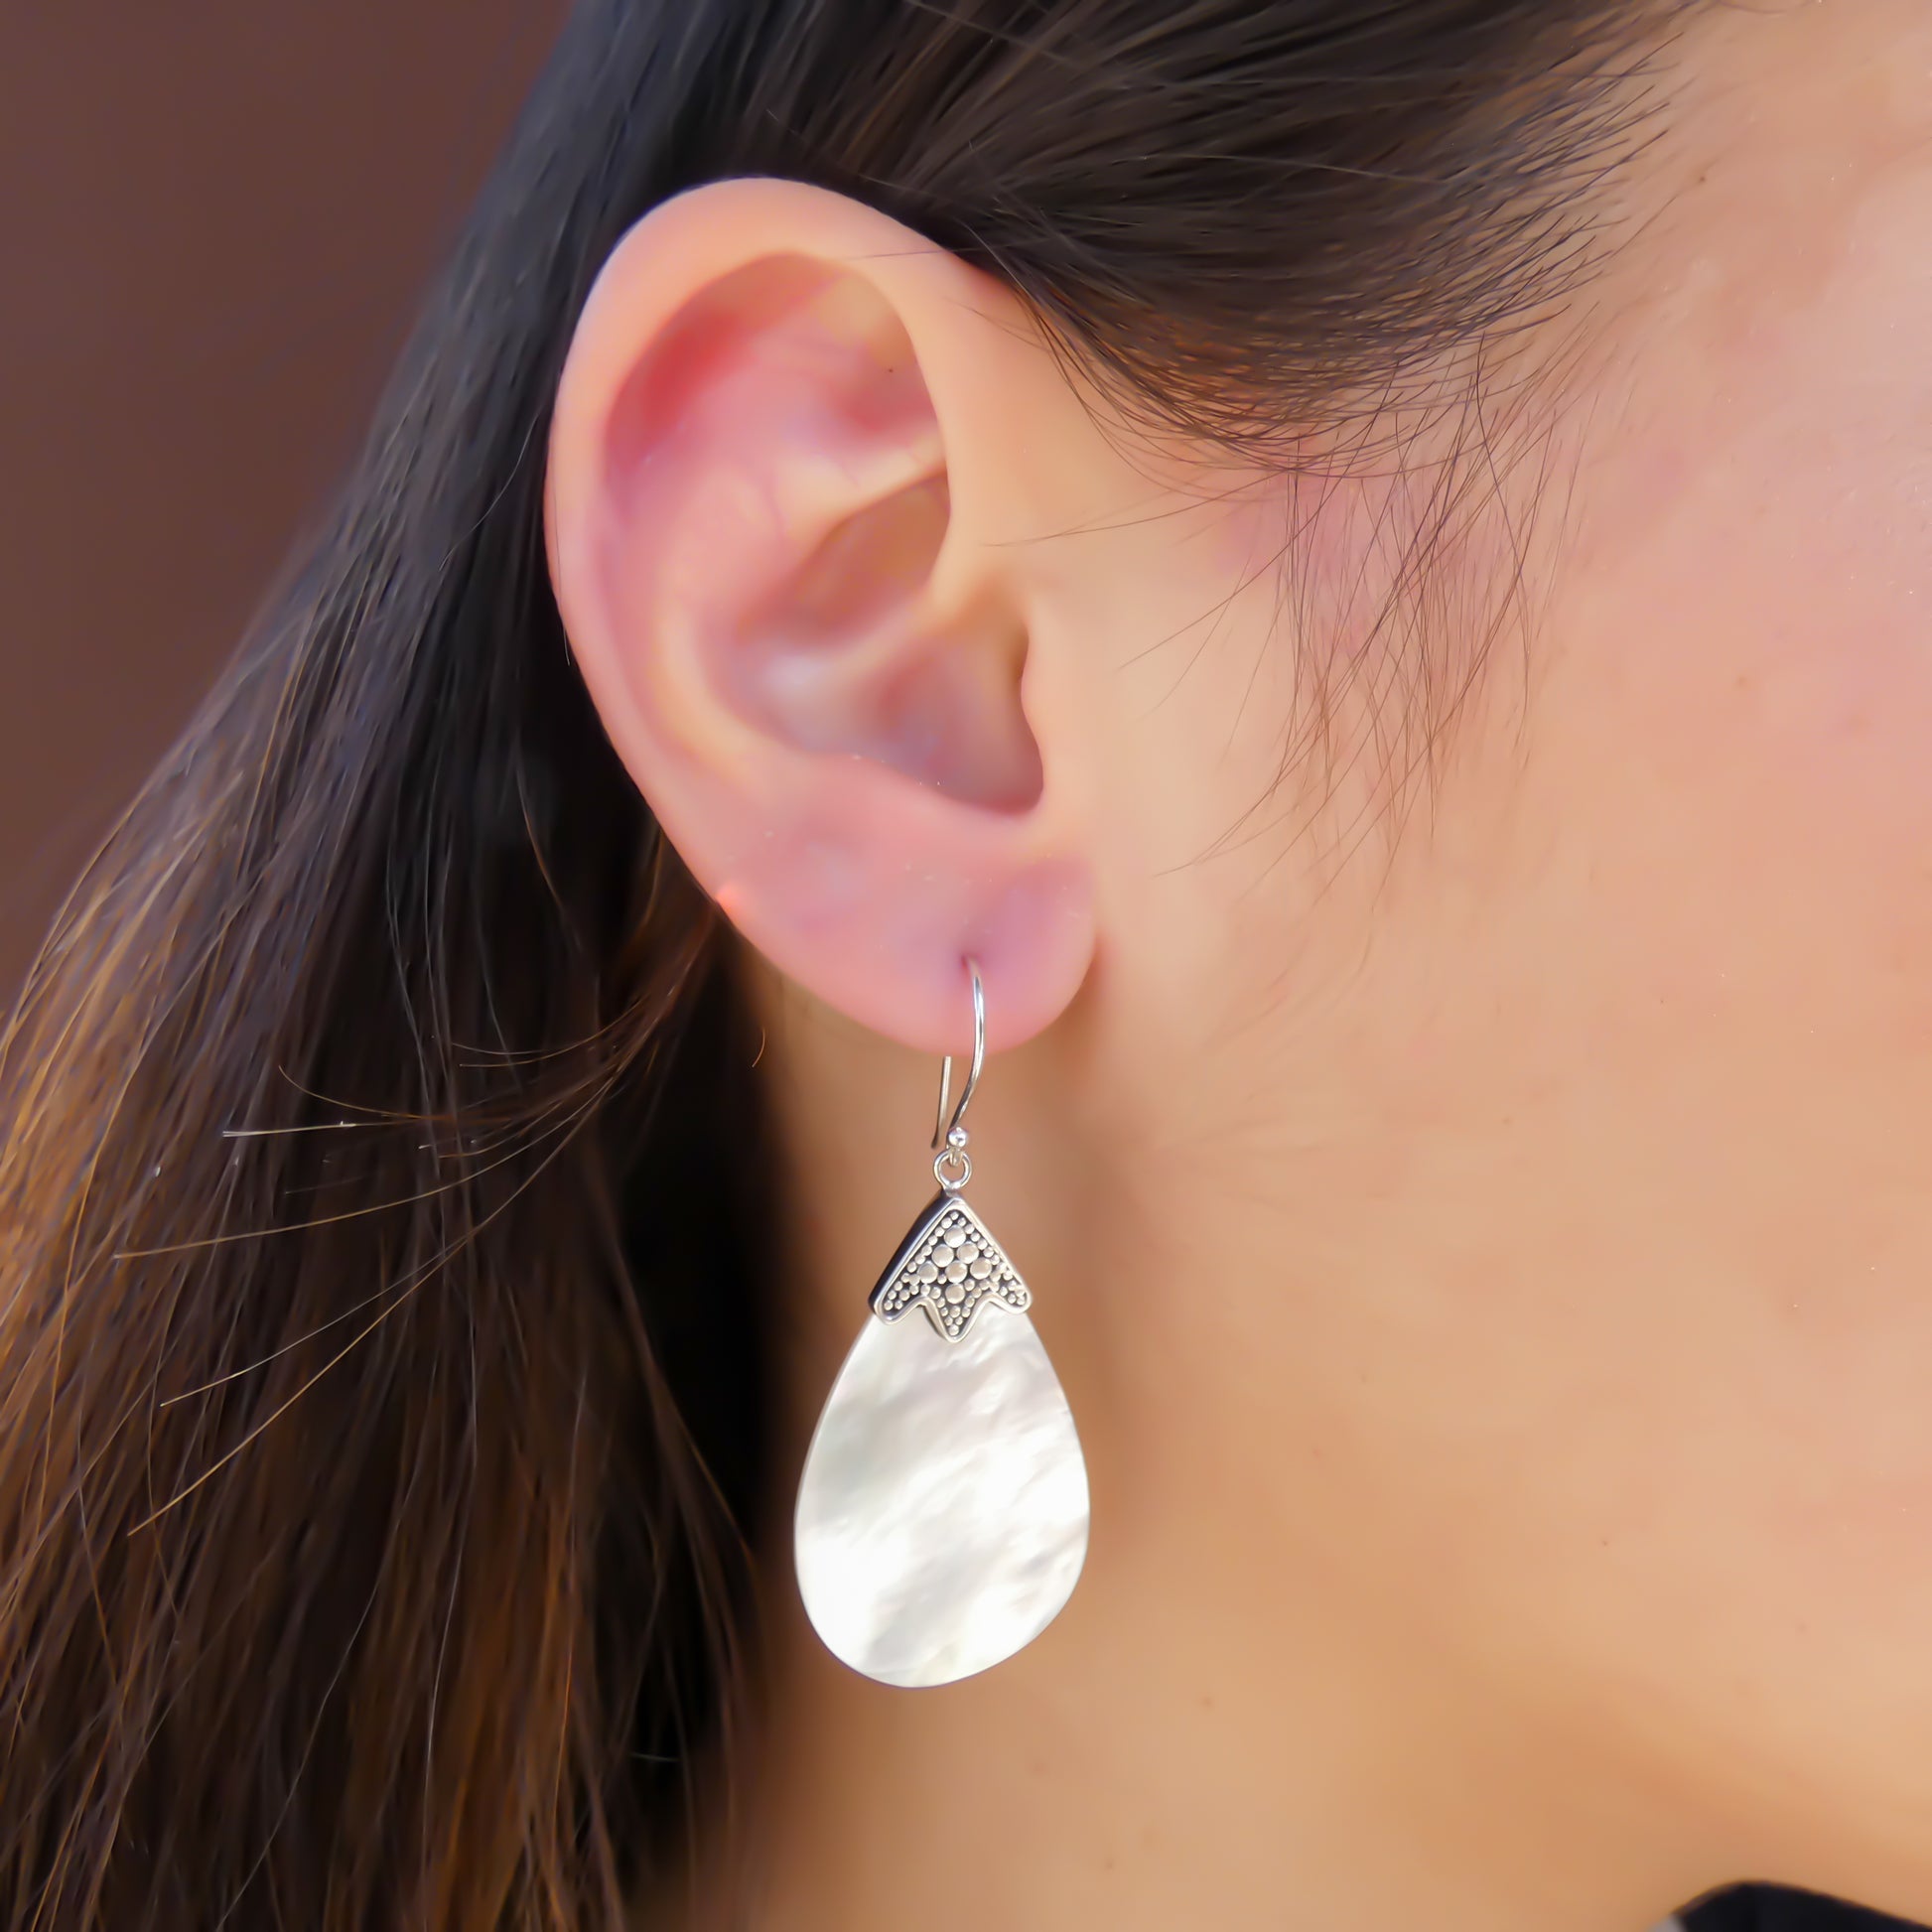 Woman wearing silver earrings with teardrop shell.